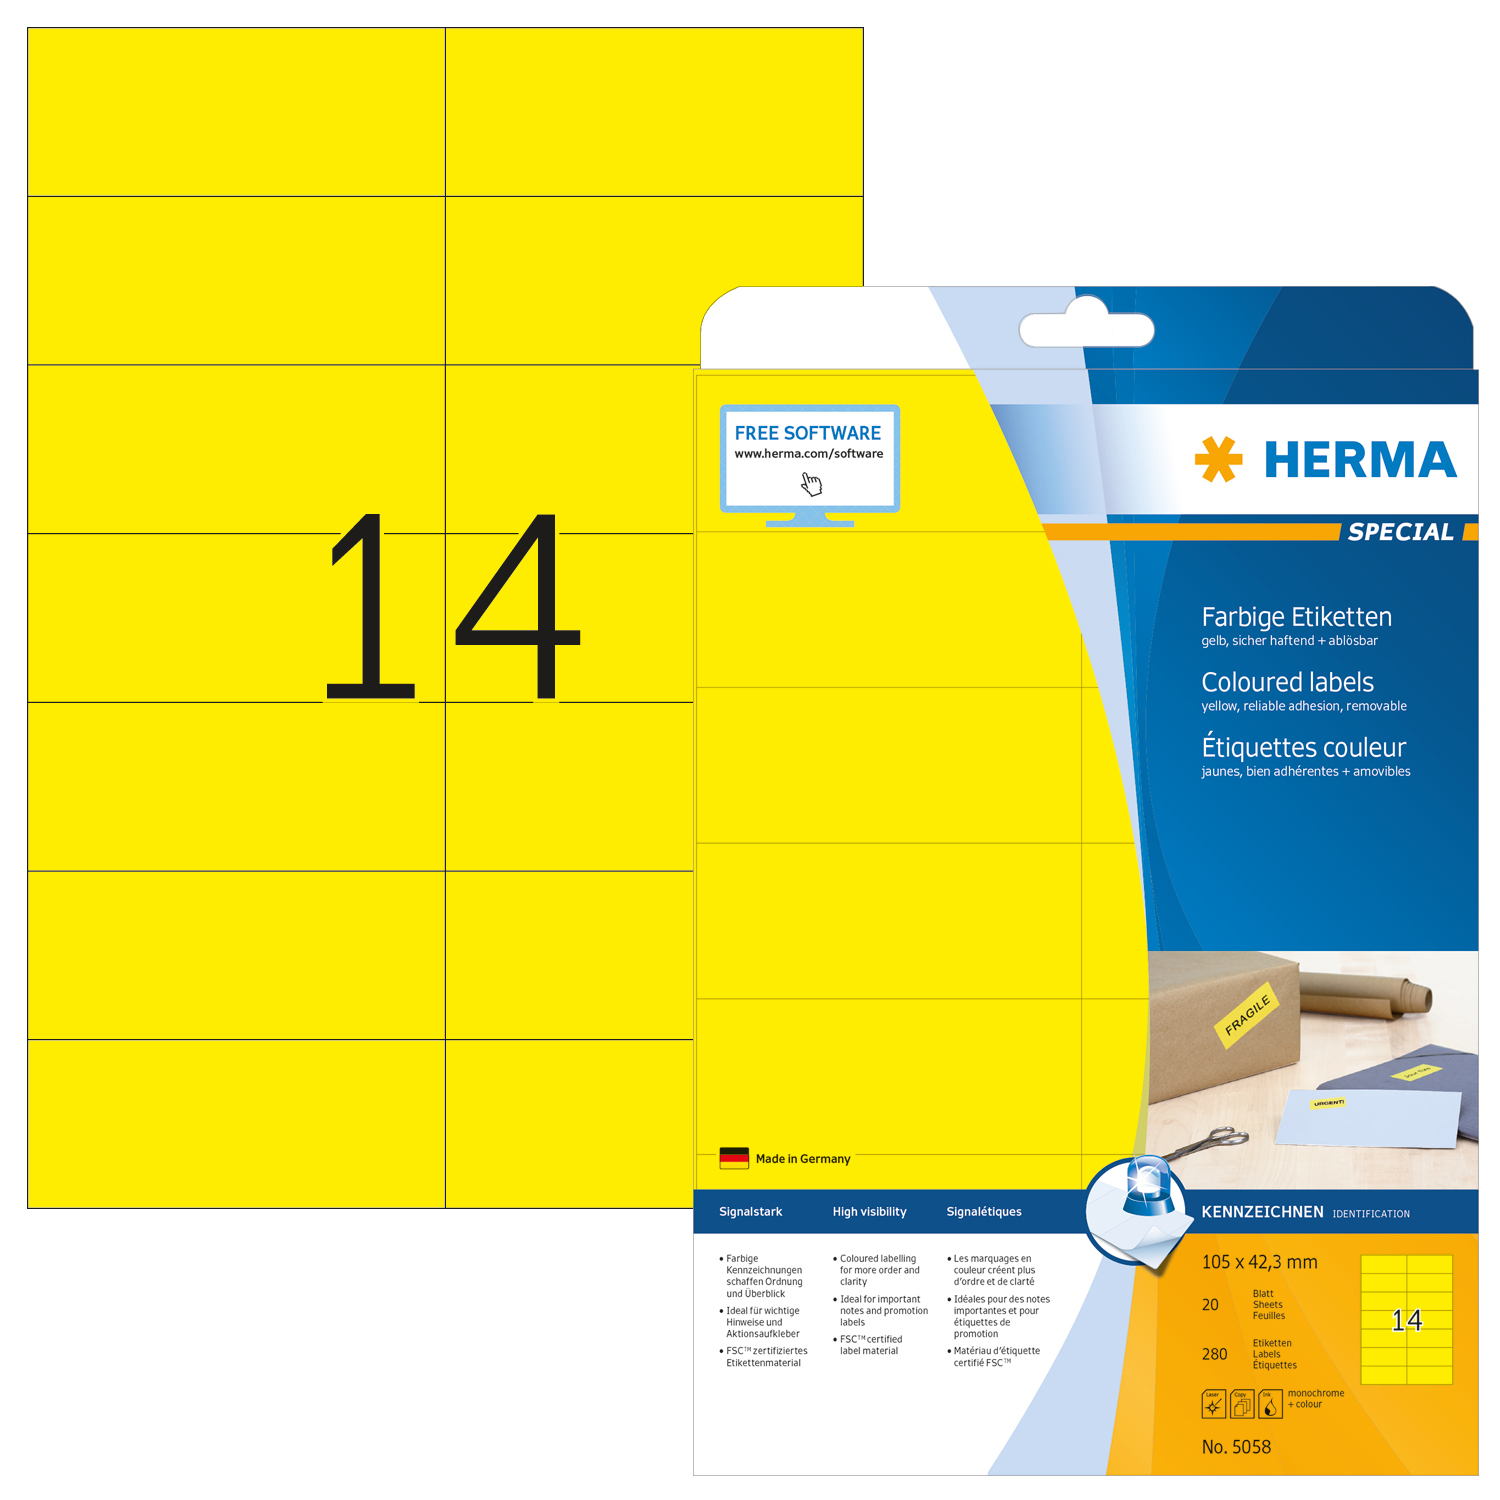 HERMA Etiquettes Special 105×42,3mm 5058 jaune 280 pcs.